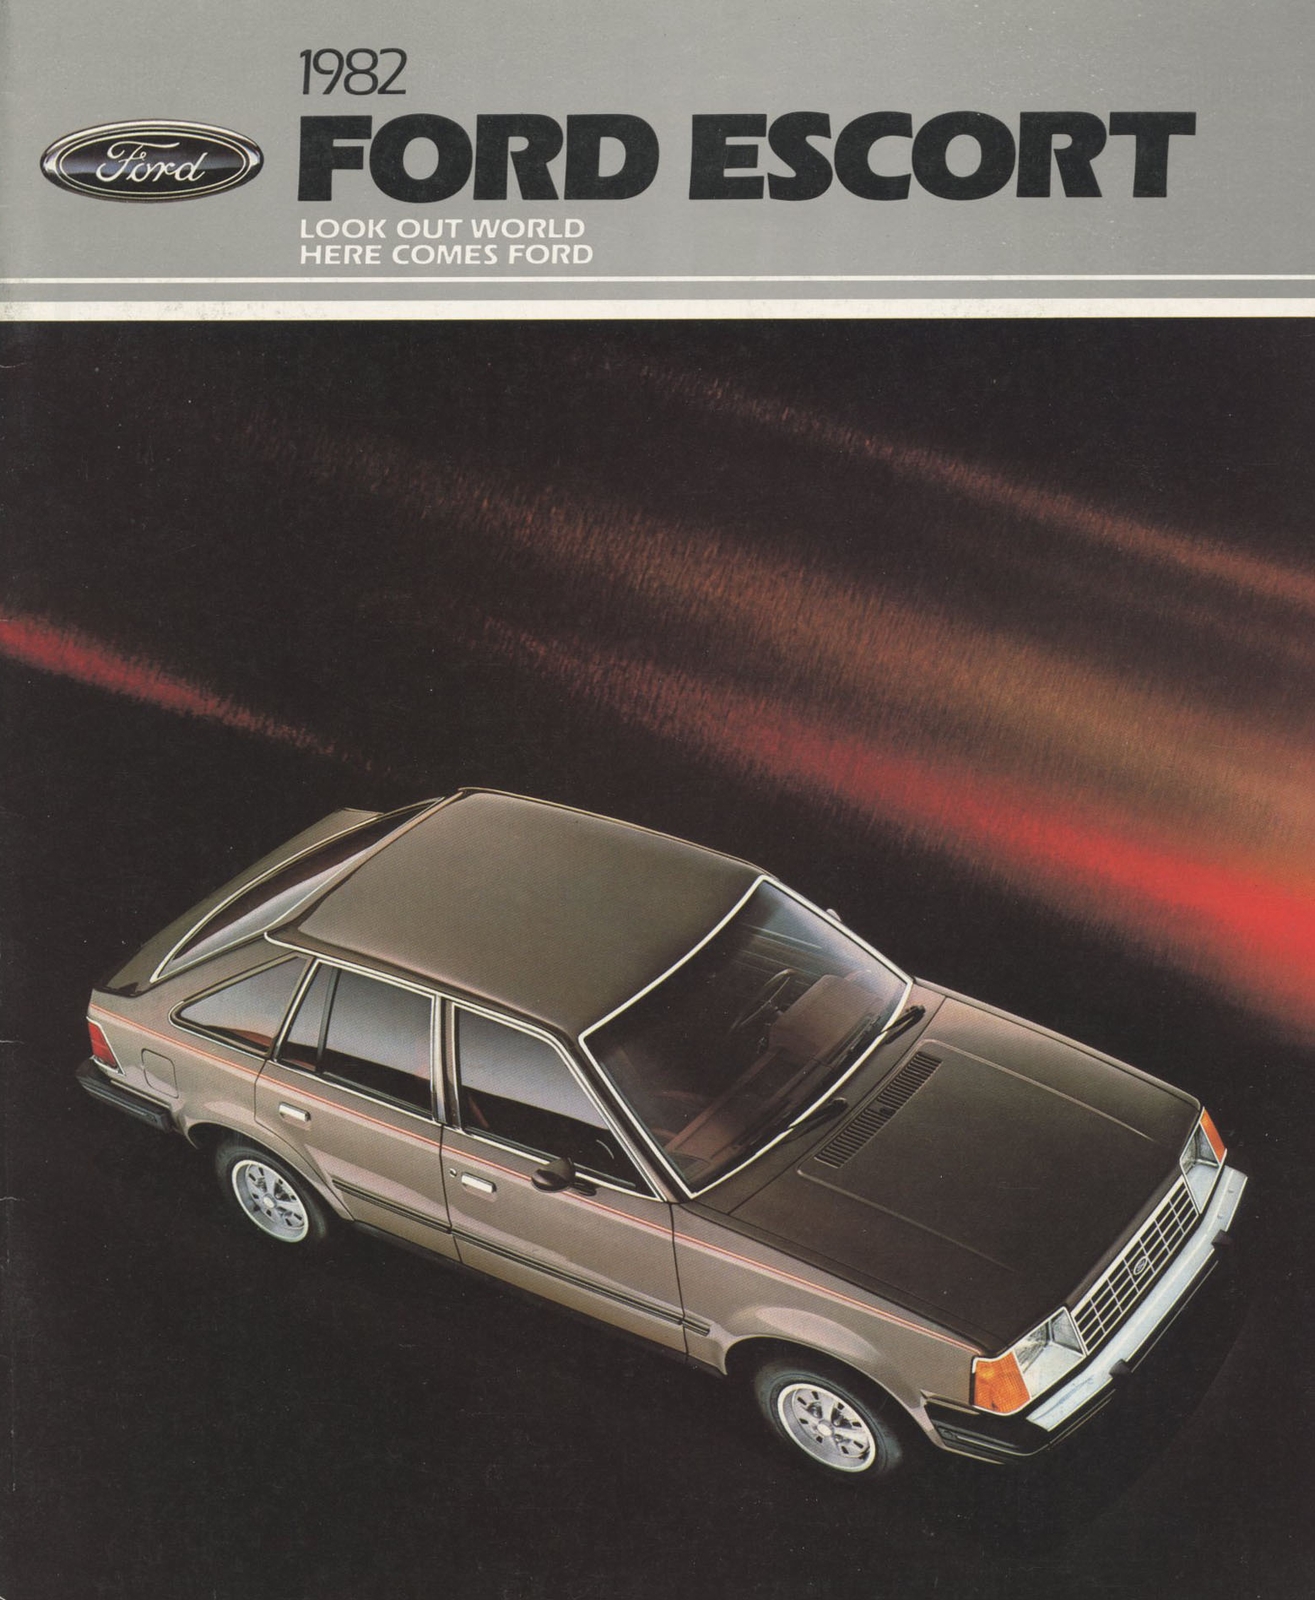 n_1982 Ford Escort-01.jpg